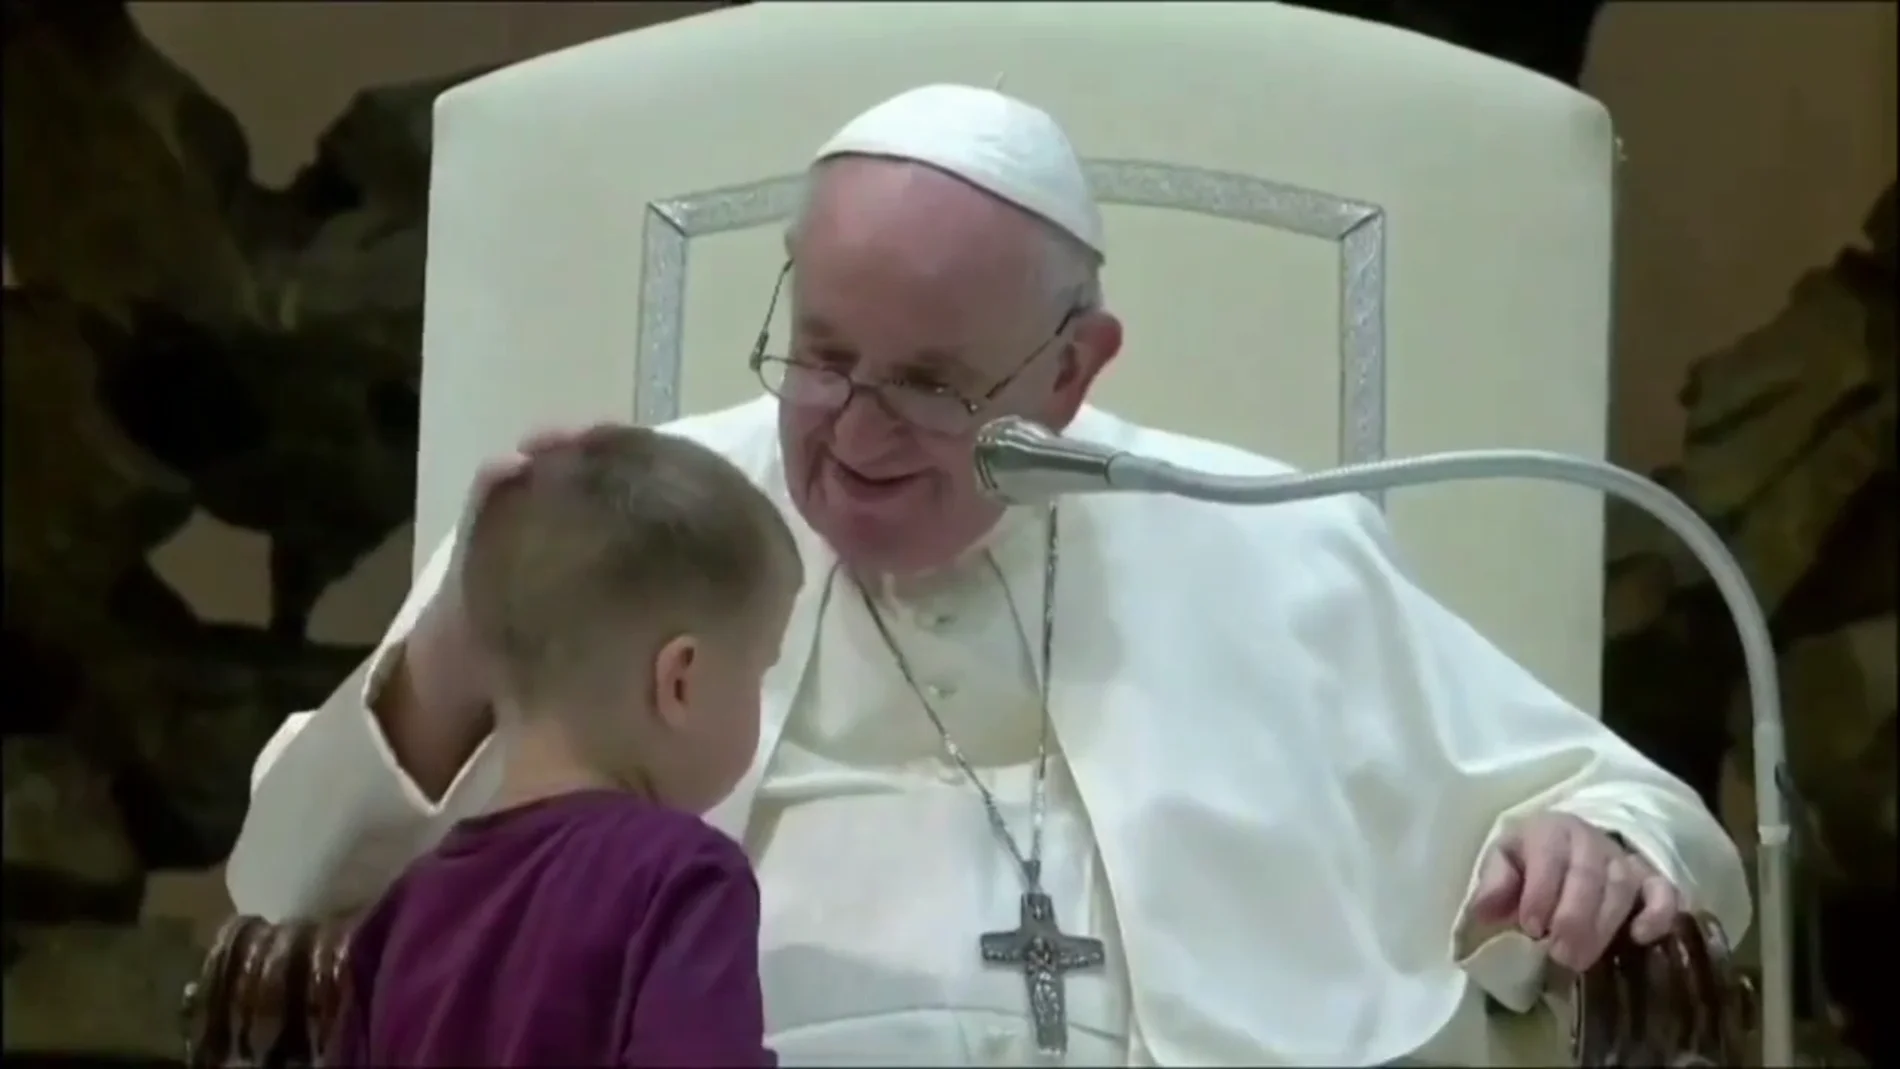 El cariñoso gesto del papa Francisco con un niño que se le acerca en plena audiencia: "Este ha sido un valiente"